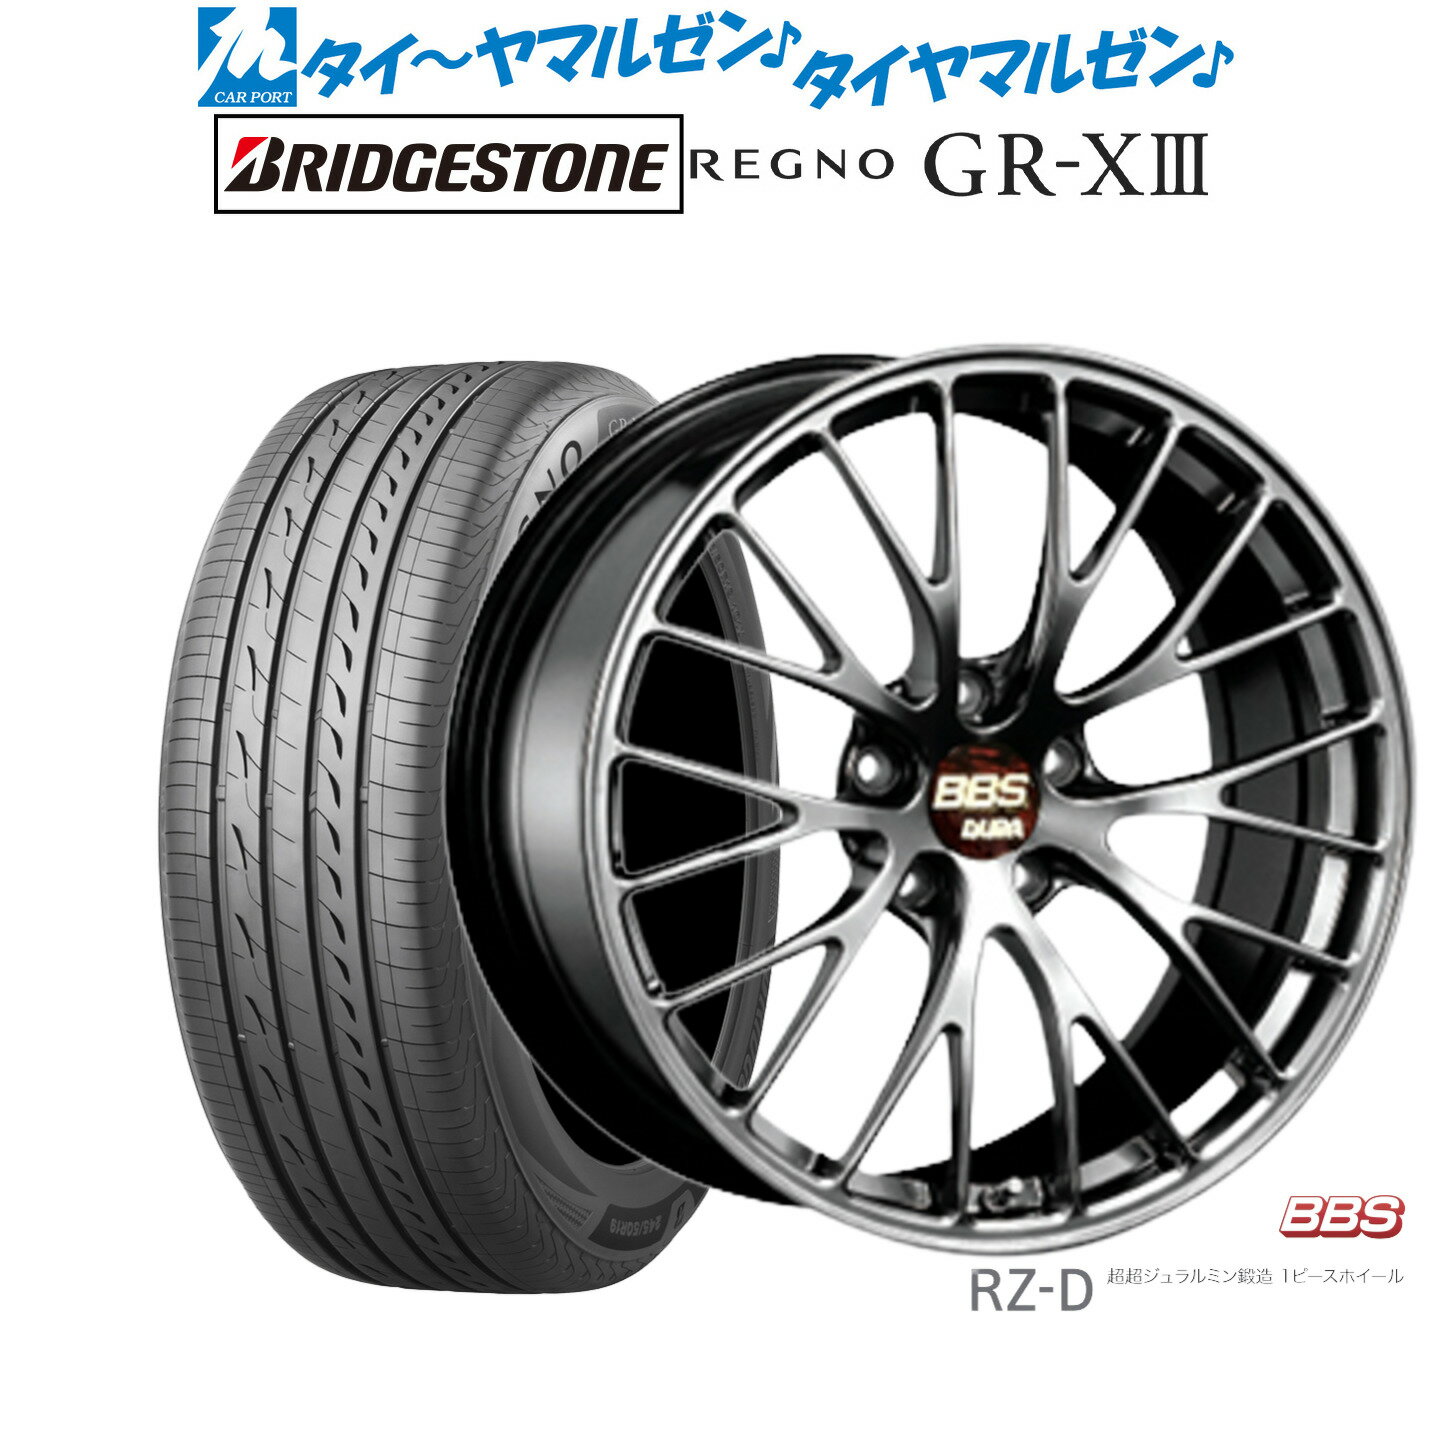 [5/20]割引クーポン配布新品 サマータイヤ ホイール4本セットBBS JAPAN RZ-D20インチ 8.5Jブリヂストン REGNO レグノ GR-XIII(GR-X3)245/35R20